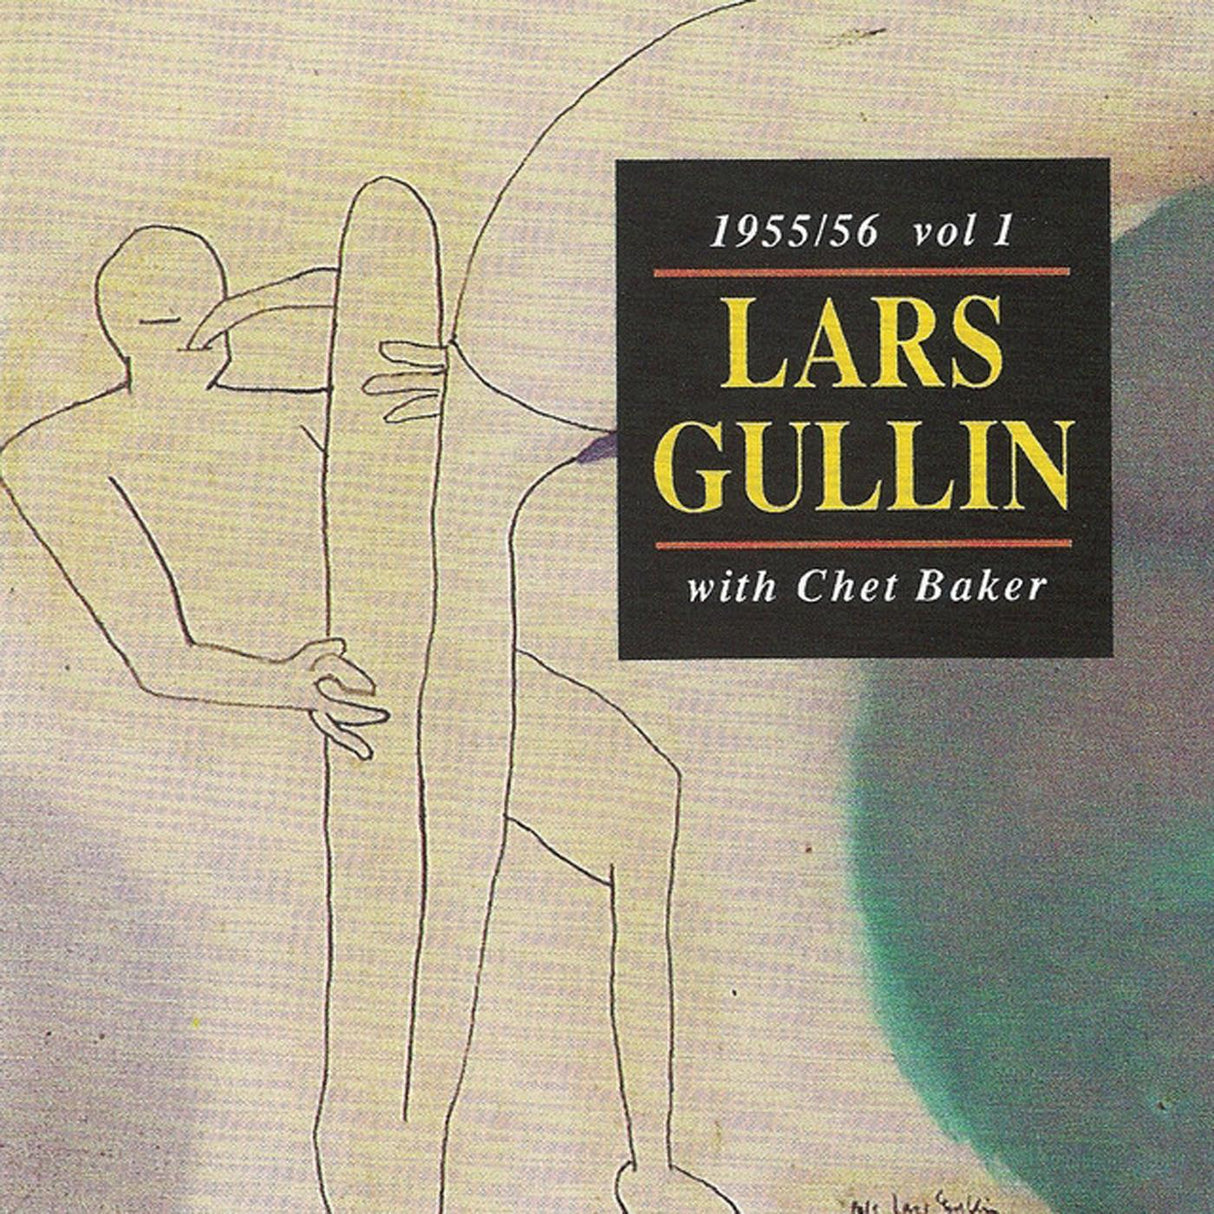 Lars Gullin - 1955/56 vol.1 with Chet Baker [CD]